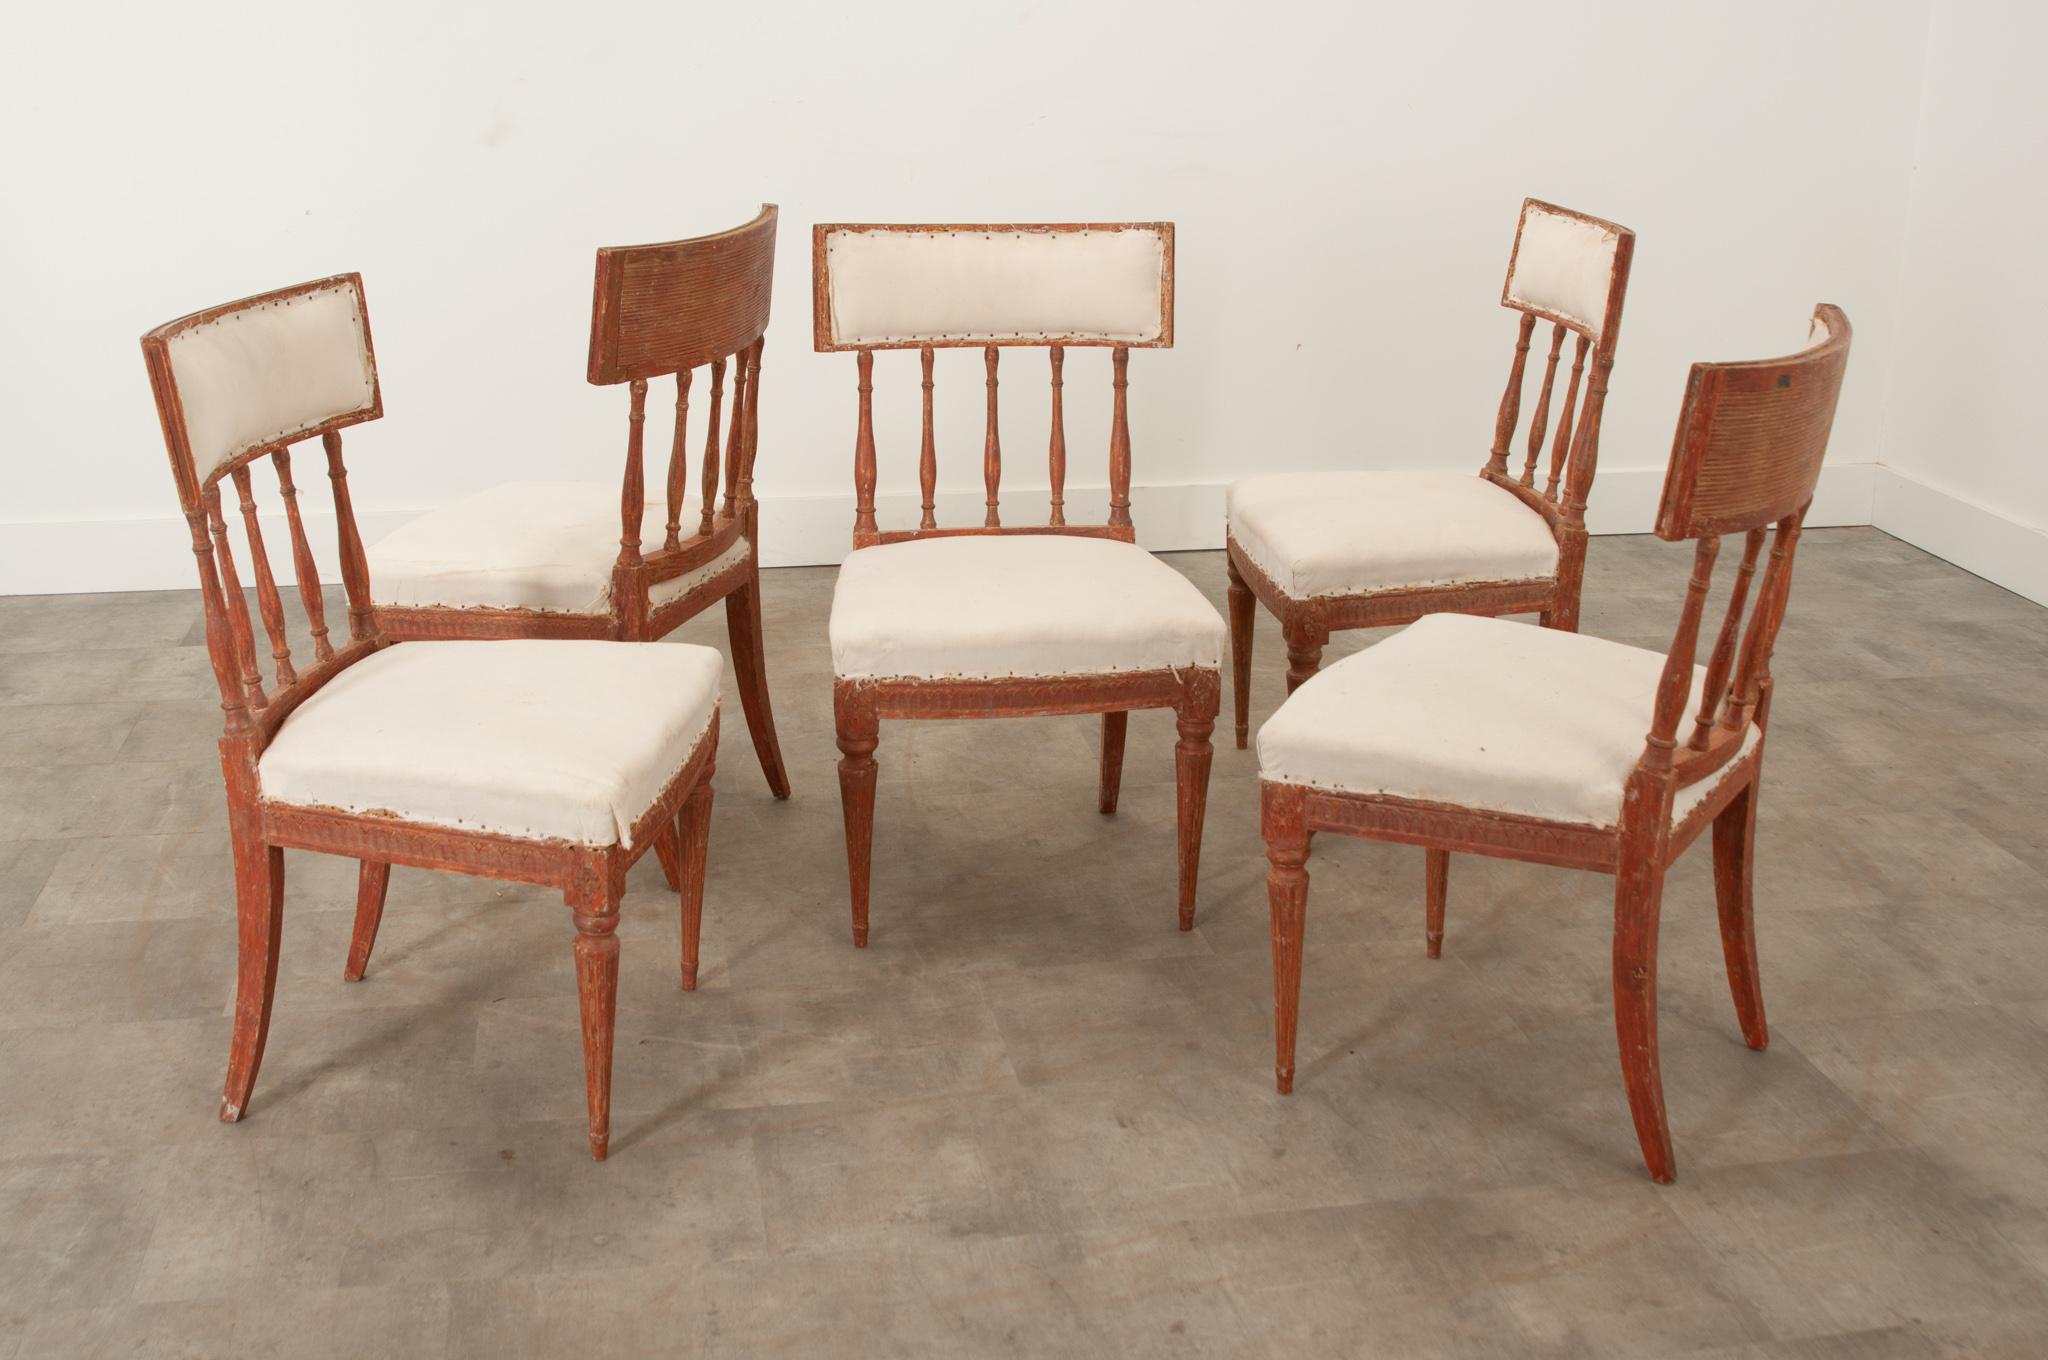 Ein Satz von fünf Esszimmerstühlen im gustavianischen Stil, ca. 1810, mit fantastischem Potenzial für jeden Raum. Die geschwungenen Rückenlehnen sind auf der Rückseite mit Ziernähten versehen und scheinen an gedrechselten Spindeln zu hängen. Die